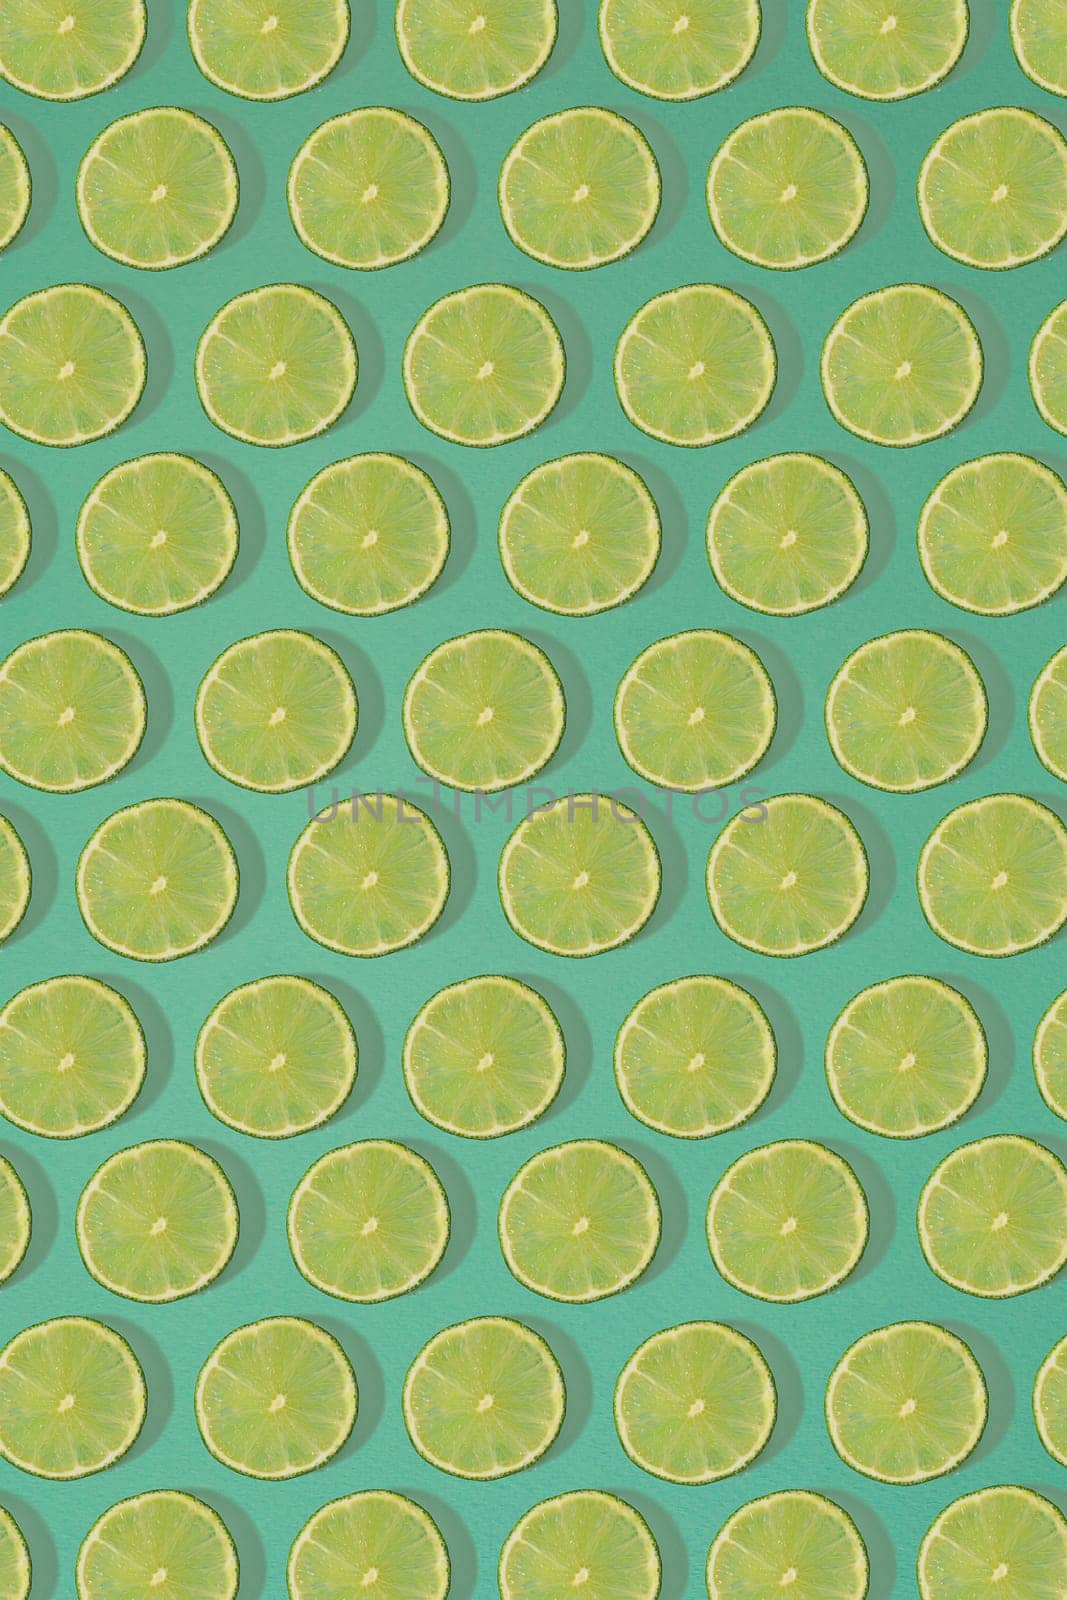 Fruit citrus seamless pattern. by nazarovsergey